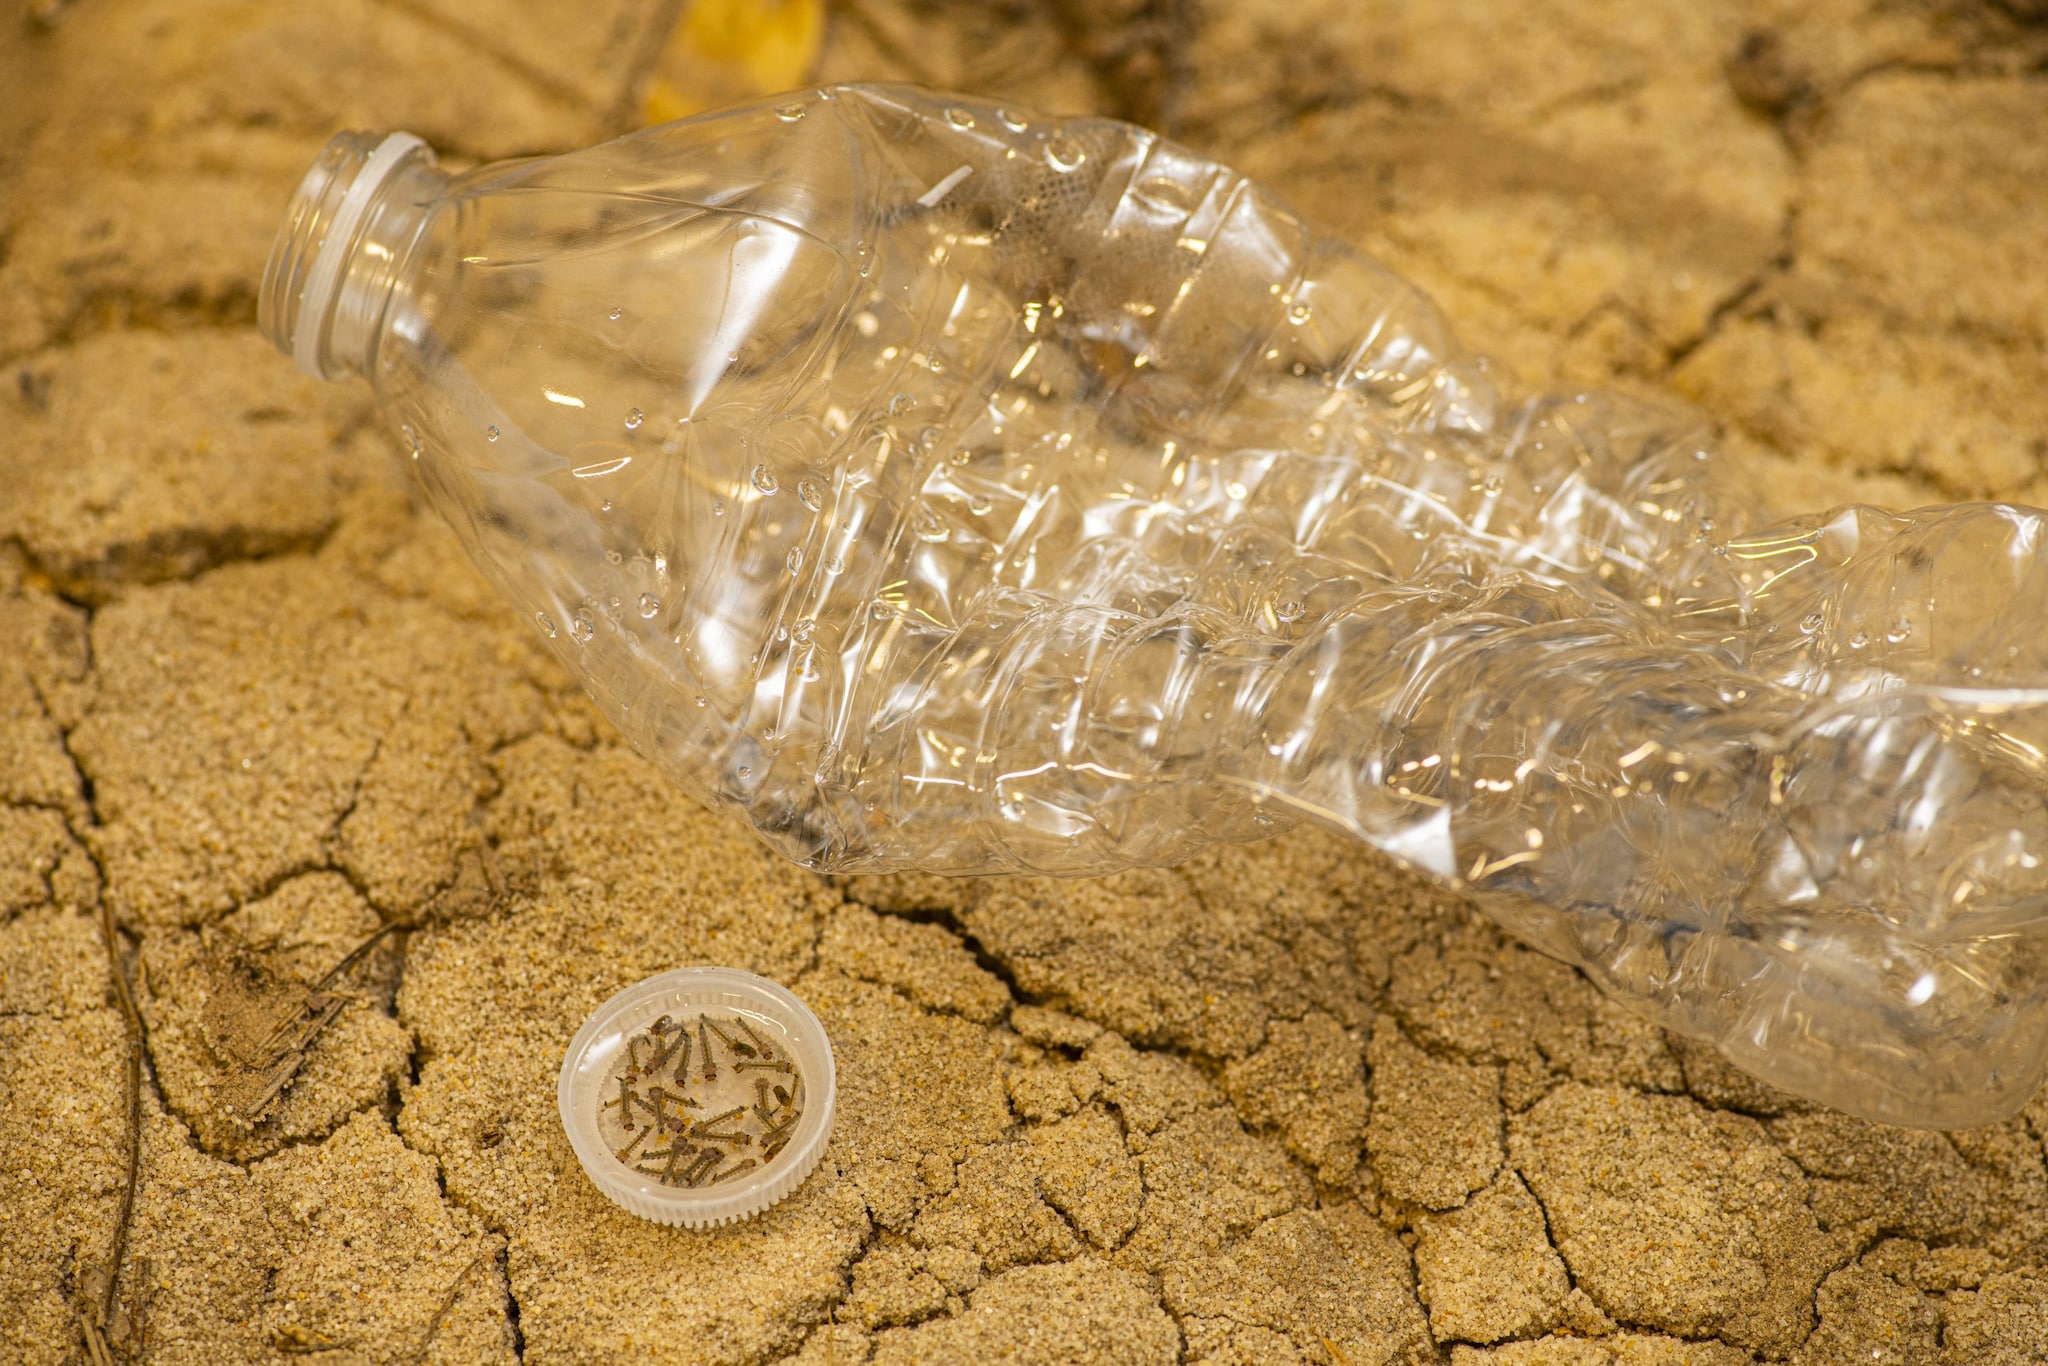 Mosquito larvae in a plastic bottle cap.